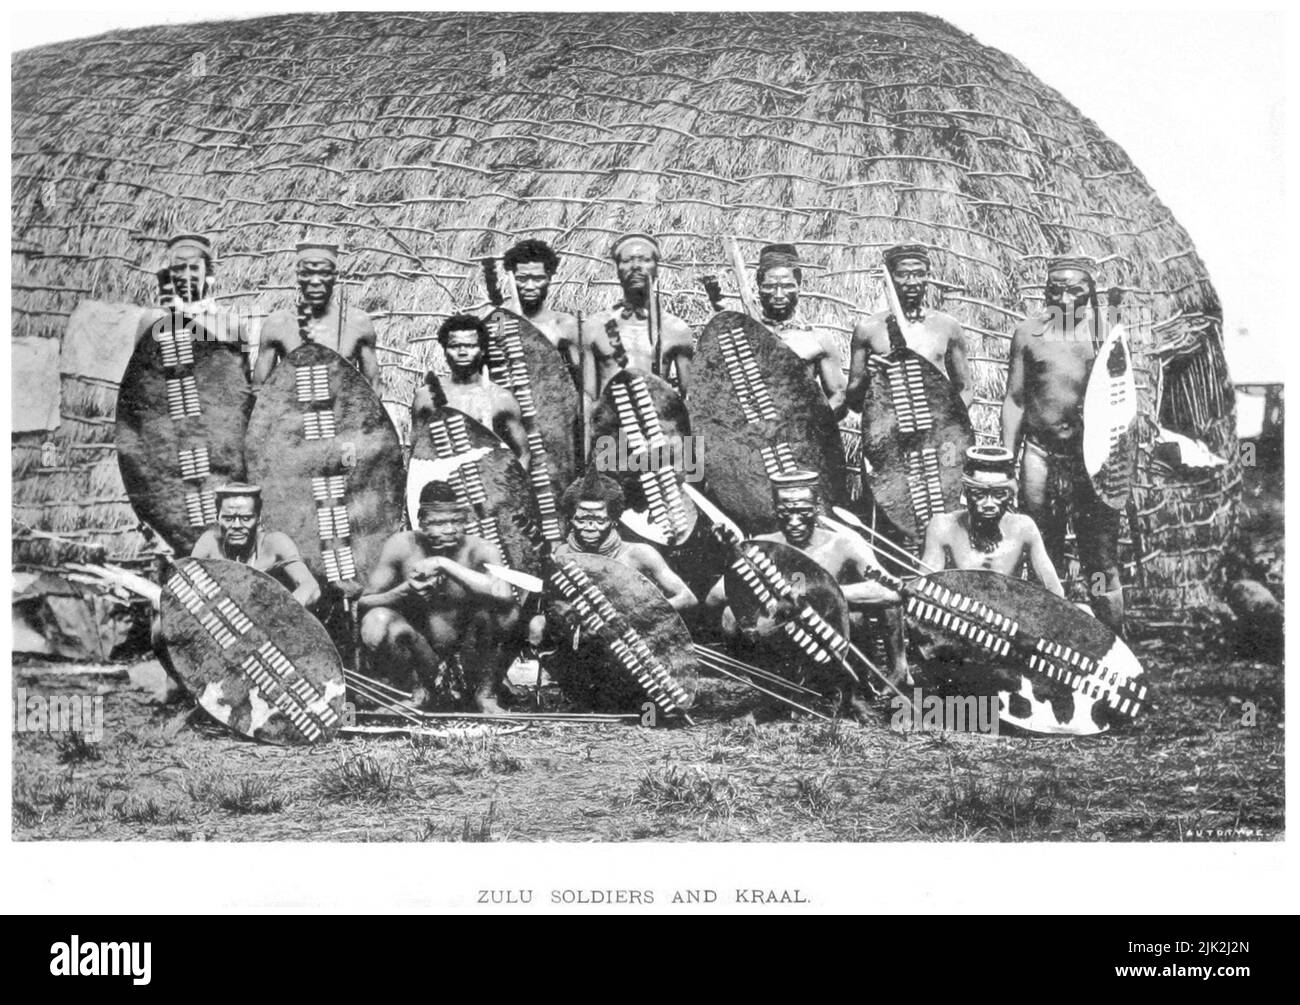 Un groupe de guerriers zoulou de 1882 à l'époque des guerres anglo-zoulou Banque D'Images